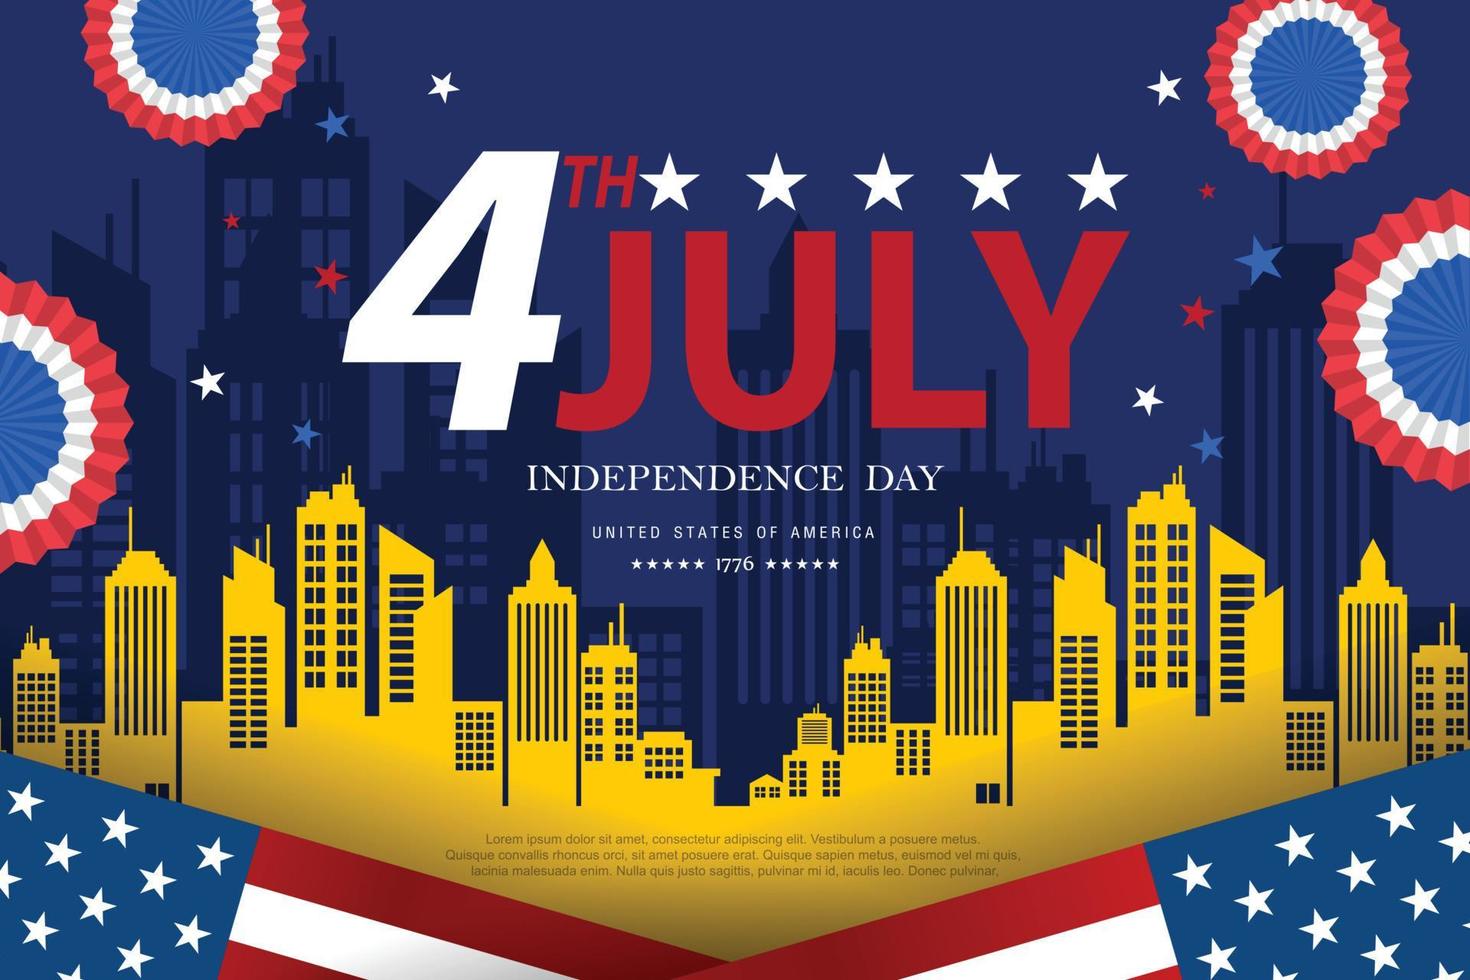 Estados Unidos da América feliz dia da independência cartão, banner, ilustração vetorial horizontal. feriado eua 4 de julho elemento de design com bandeira americana. vetor